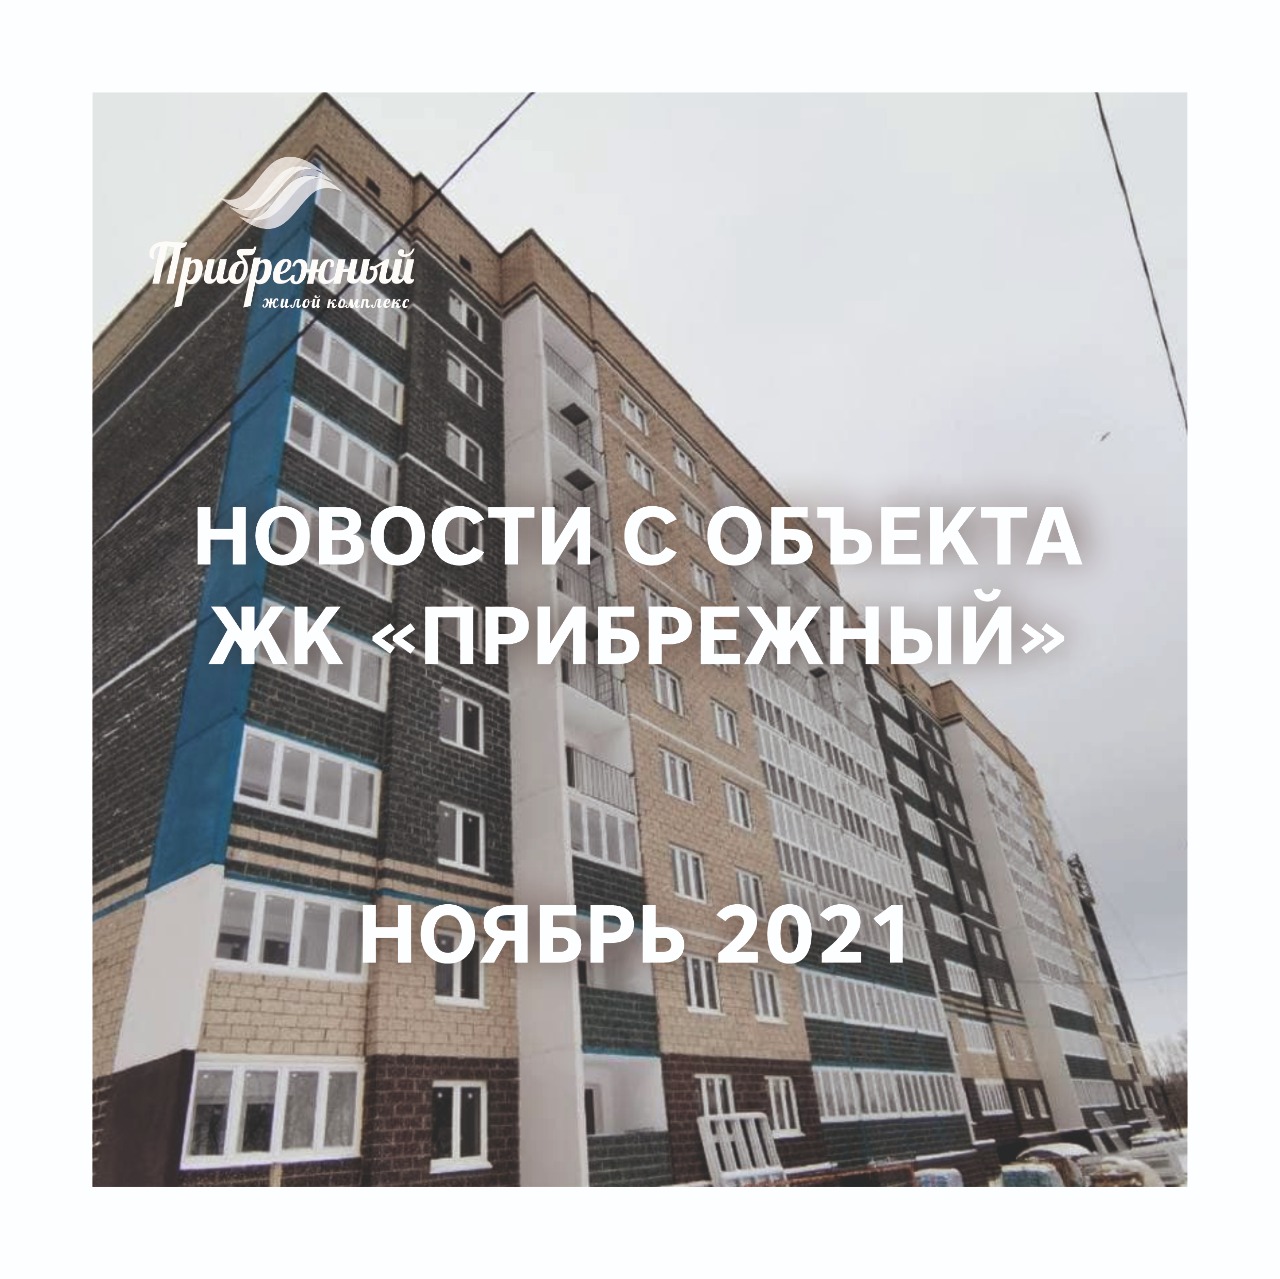 Новости с объекта ЖК "Прибрежный" за ноябрь 2021